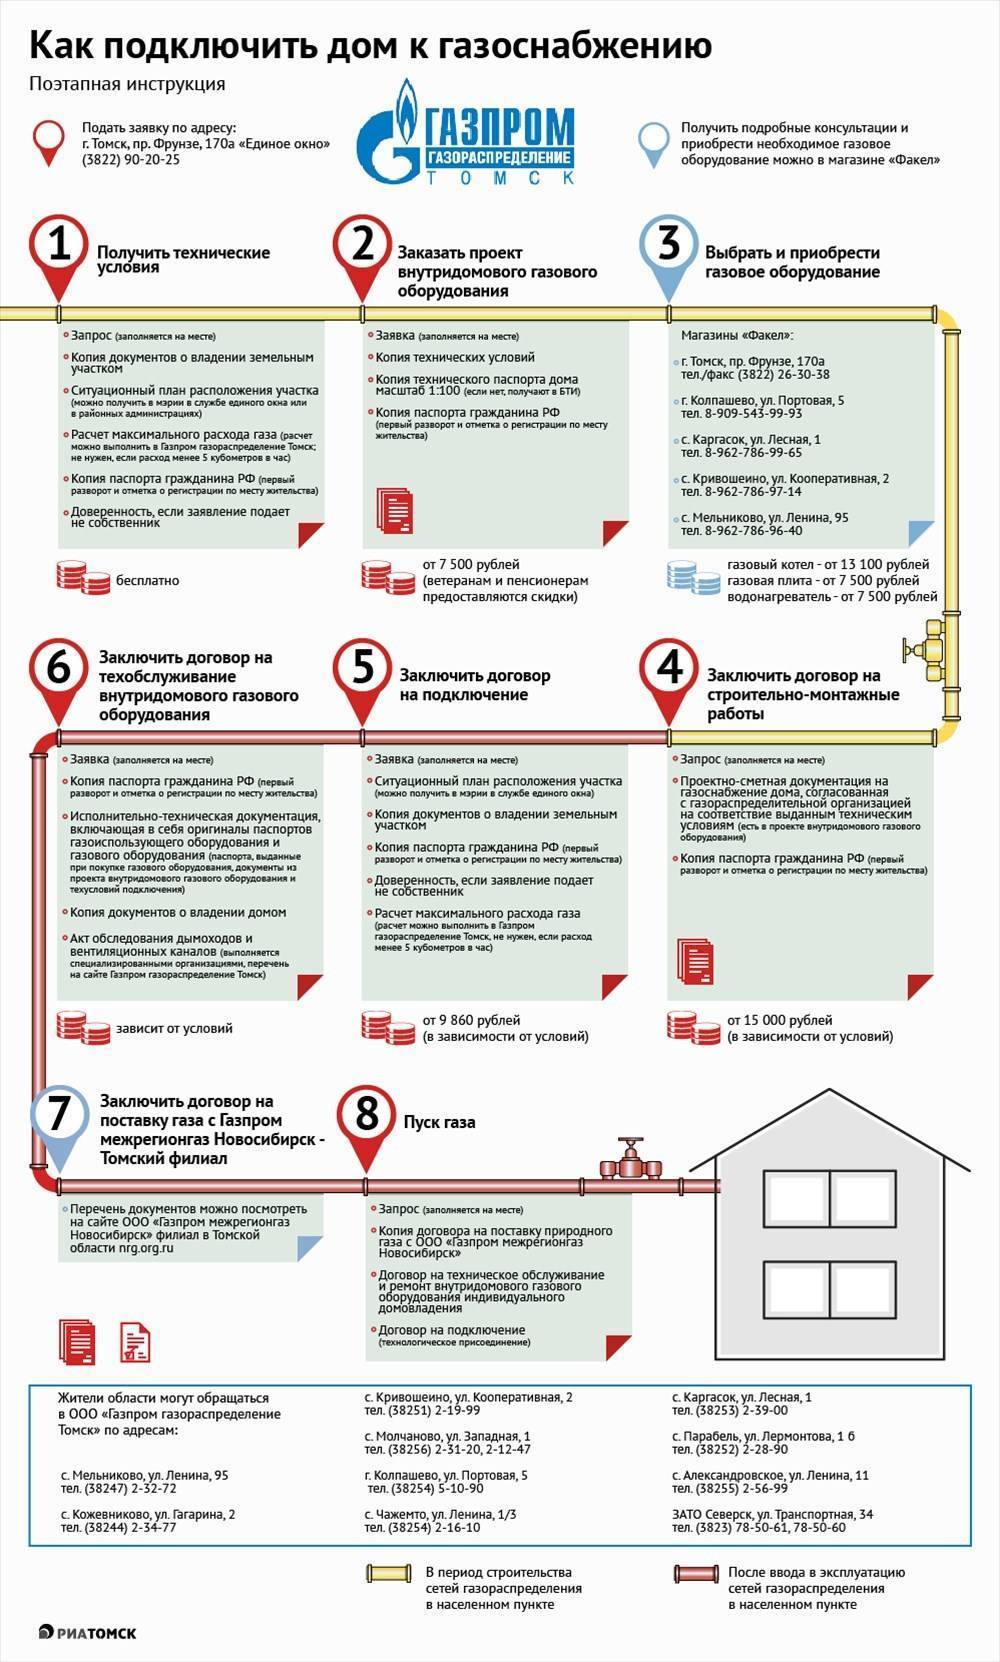 Газификация частного дома в московской области: нормы и правила в 2021 году